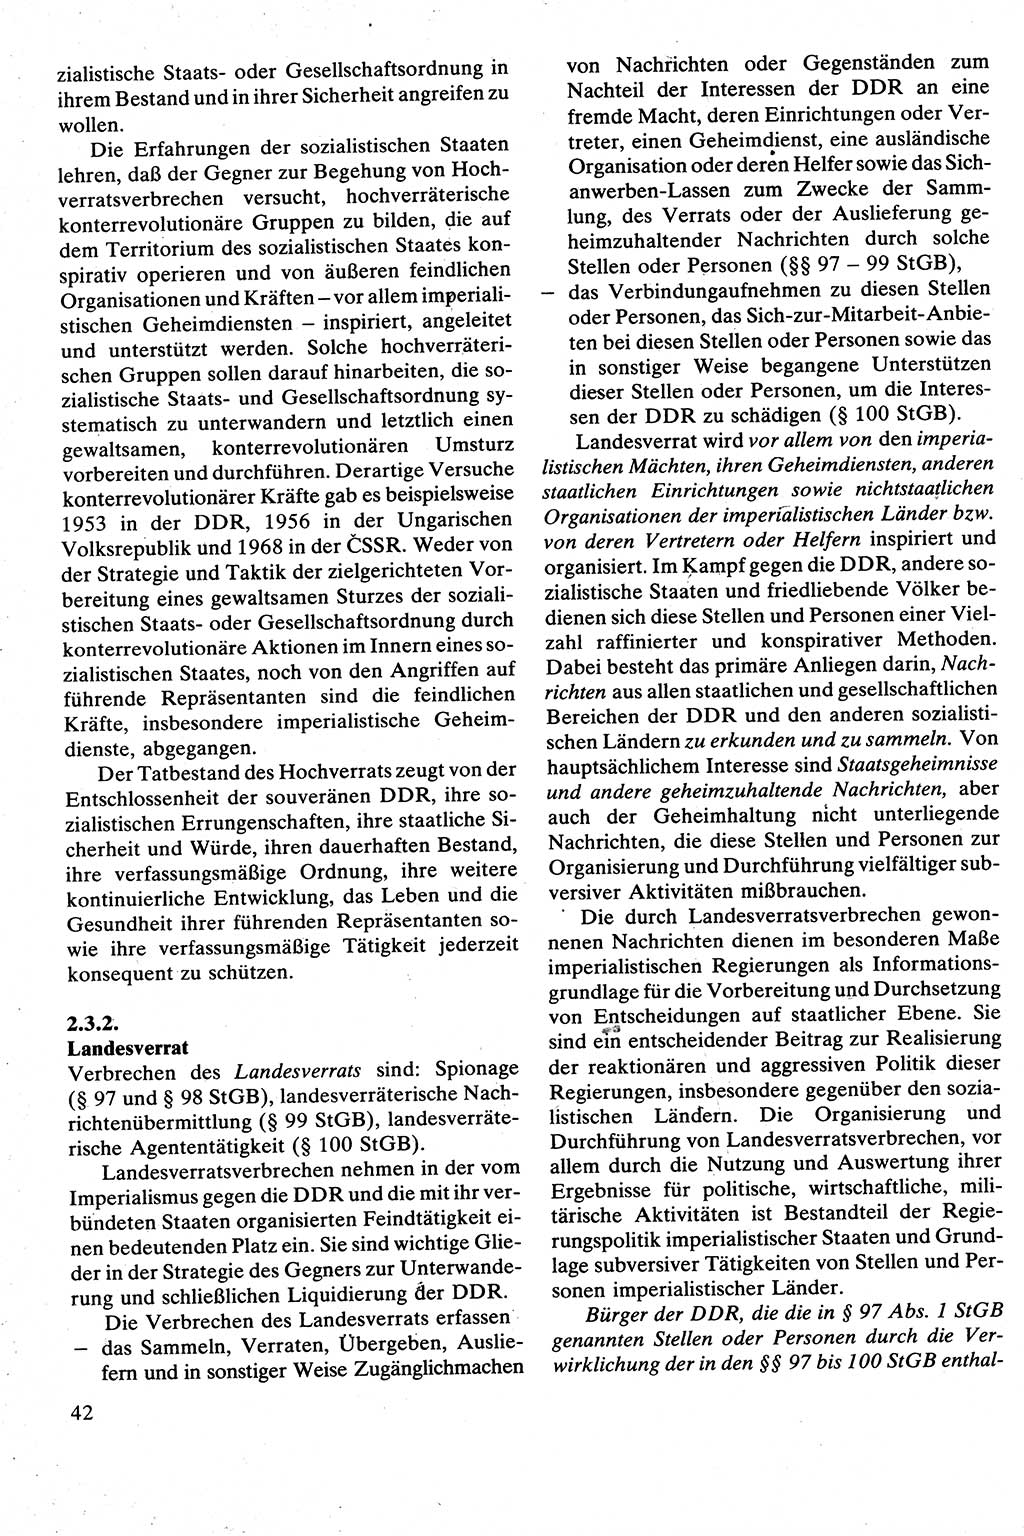 Strafrecht [Deutsche Demokratische Republik (DDR)], Besonderer Teil, Lehrbuch 1981, Seite 42 (Strafr. DDR BT Lb. 1981, S. 42)